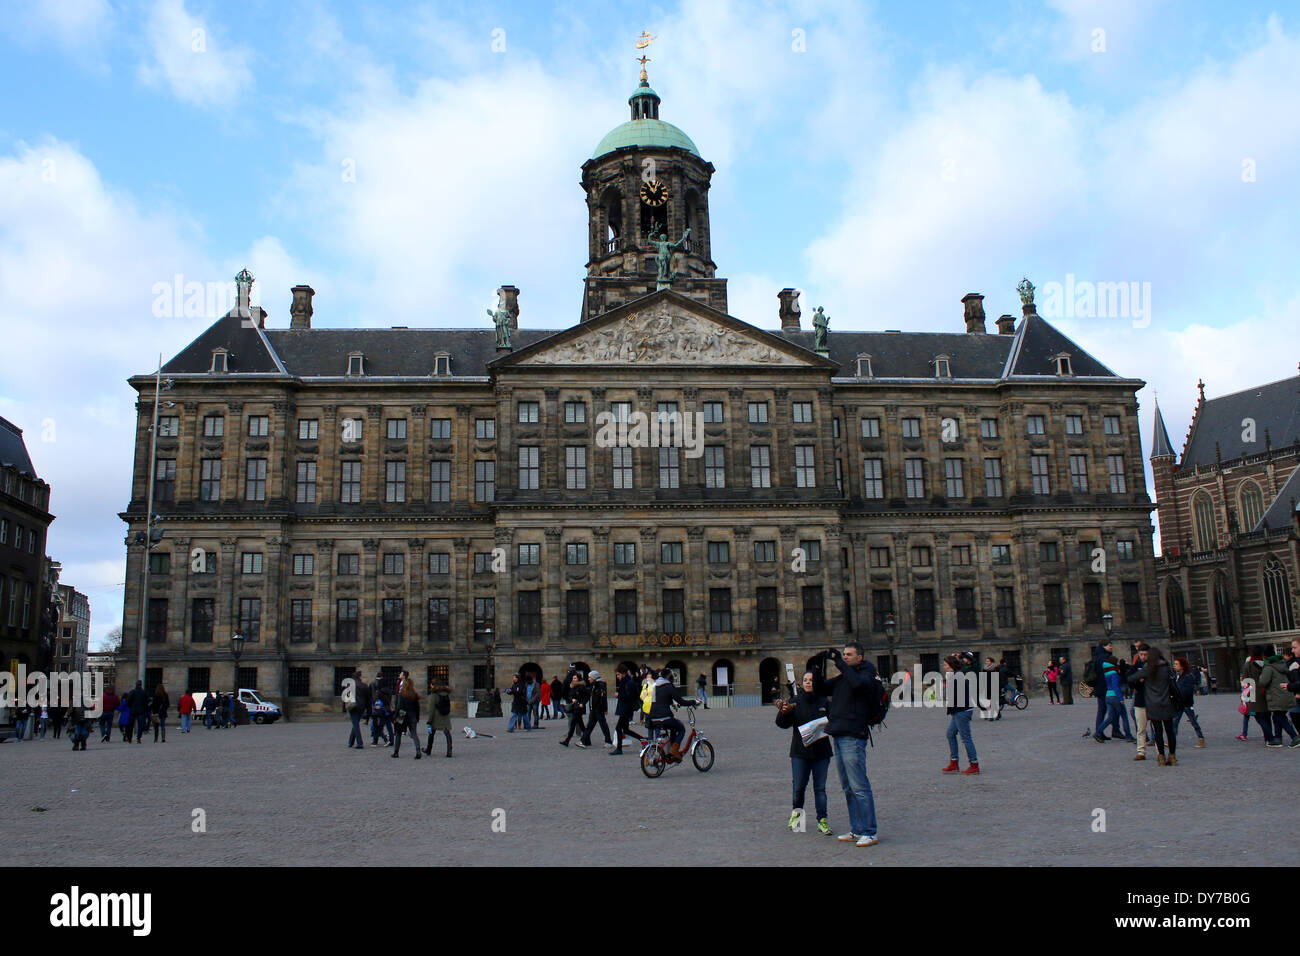 17Il secolo Paleis op de Dam/Palazzo Reale di Amsterdam in piazza Dam Foto Stock